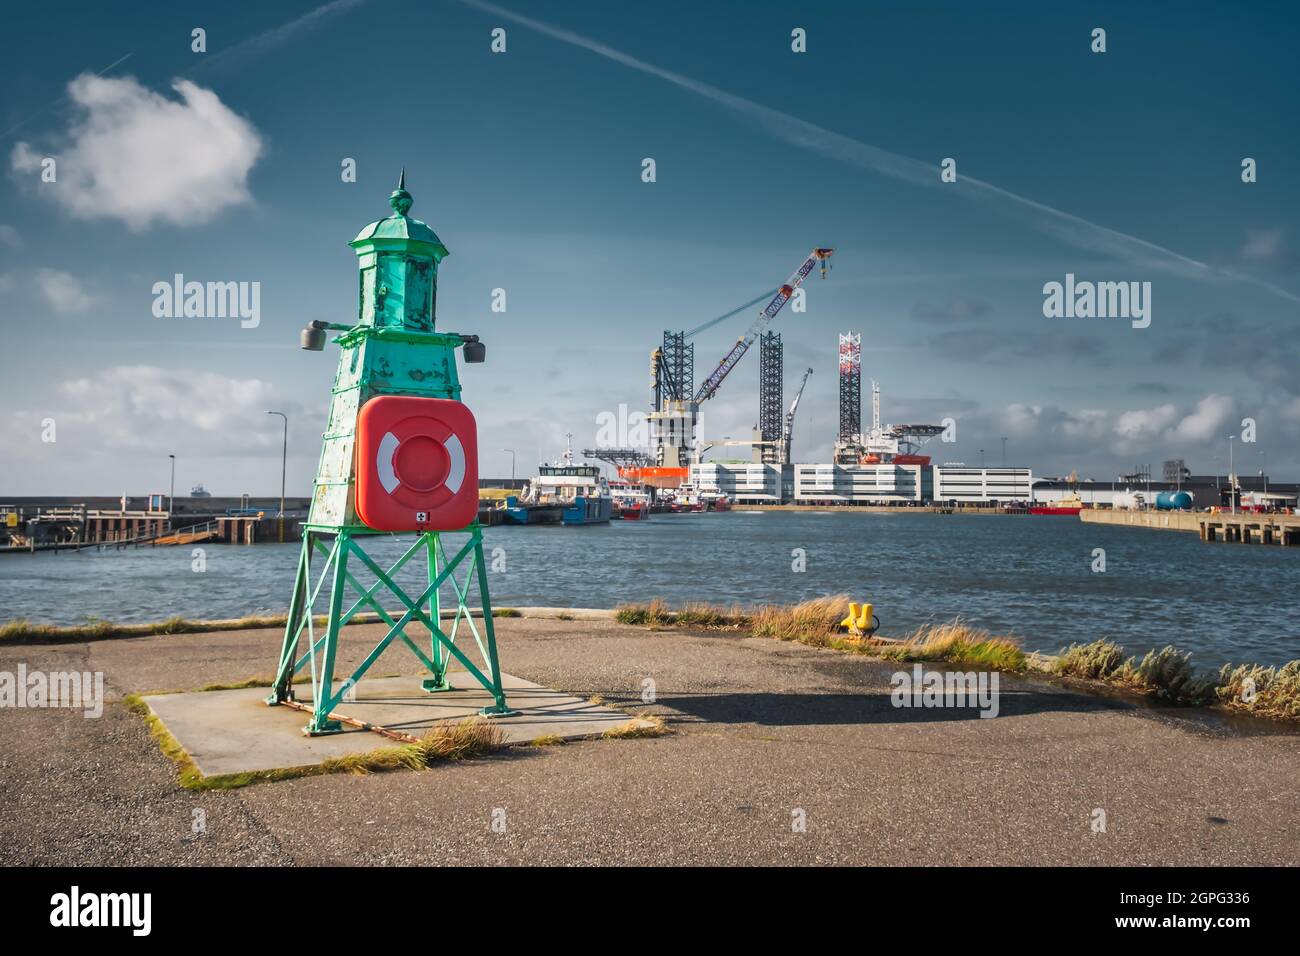 Beacon lighthouse in Esbjerg harbor, Denmark Stock Photo